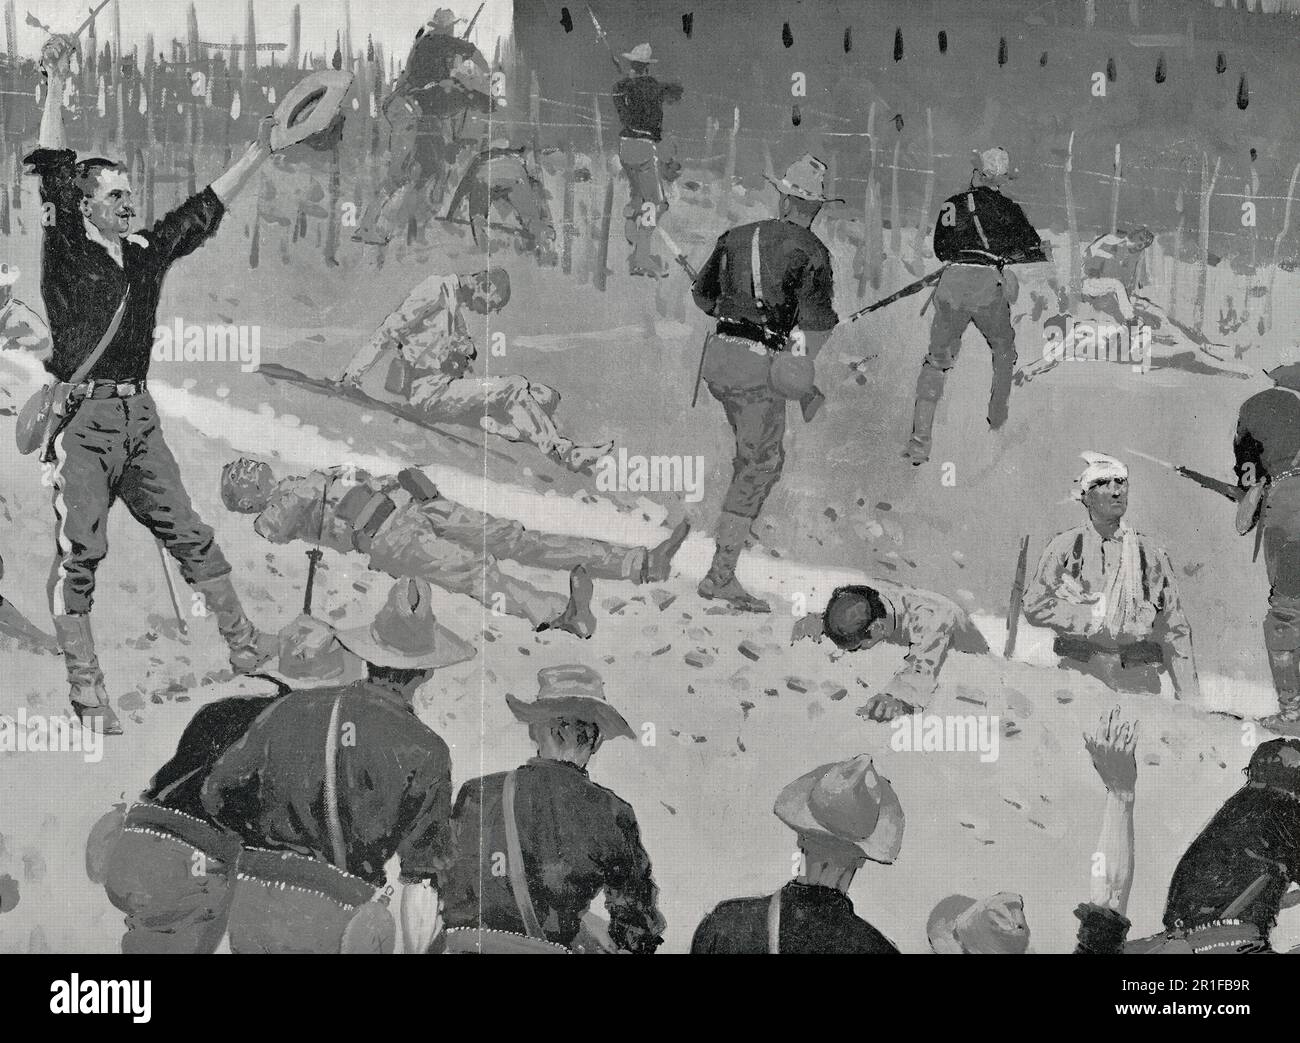 The Storming of San Juan - The Head of the Charge - Santiago de Cuba, 1. Juli 1898 - Spanischer amerikanischer Krieg Stockfoto